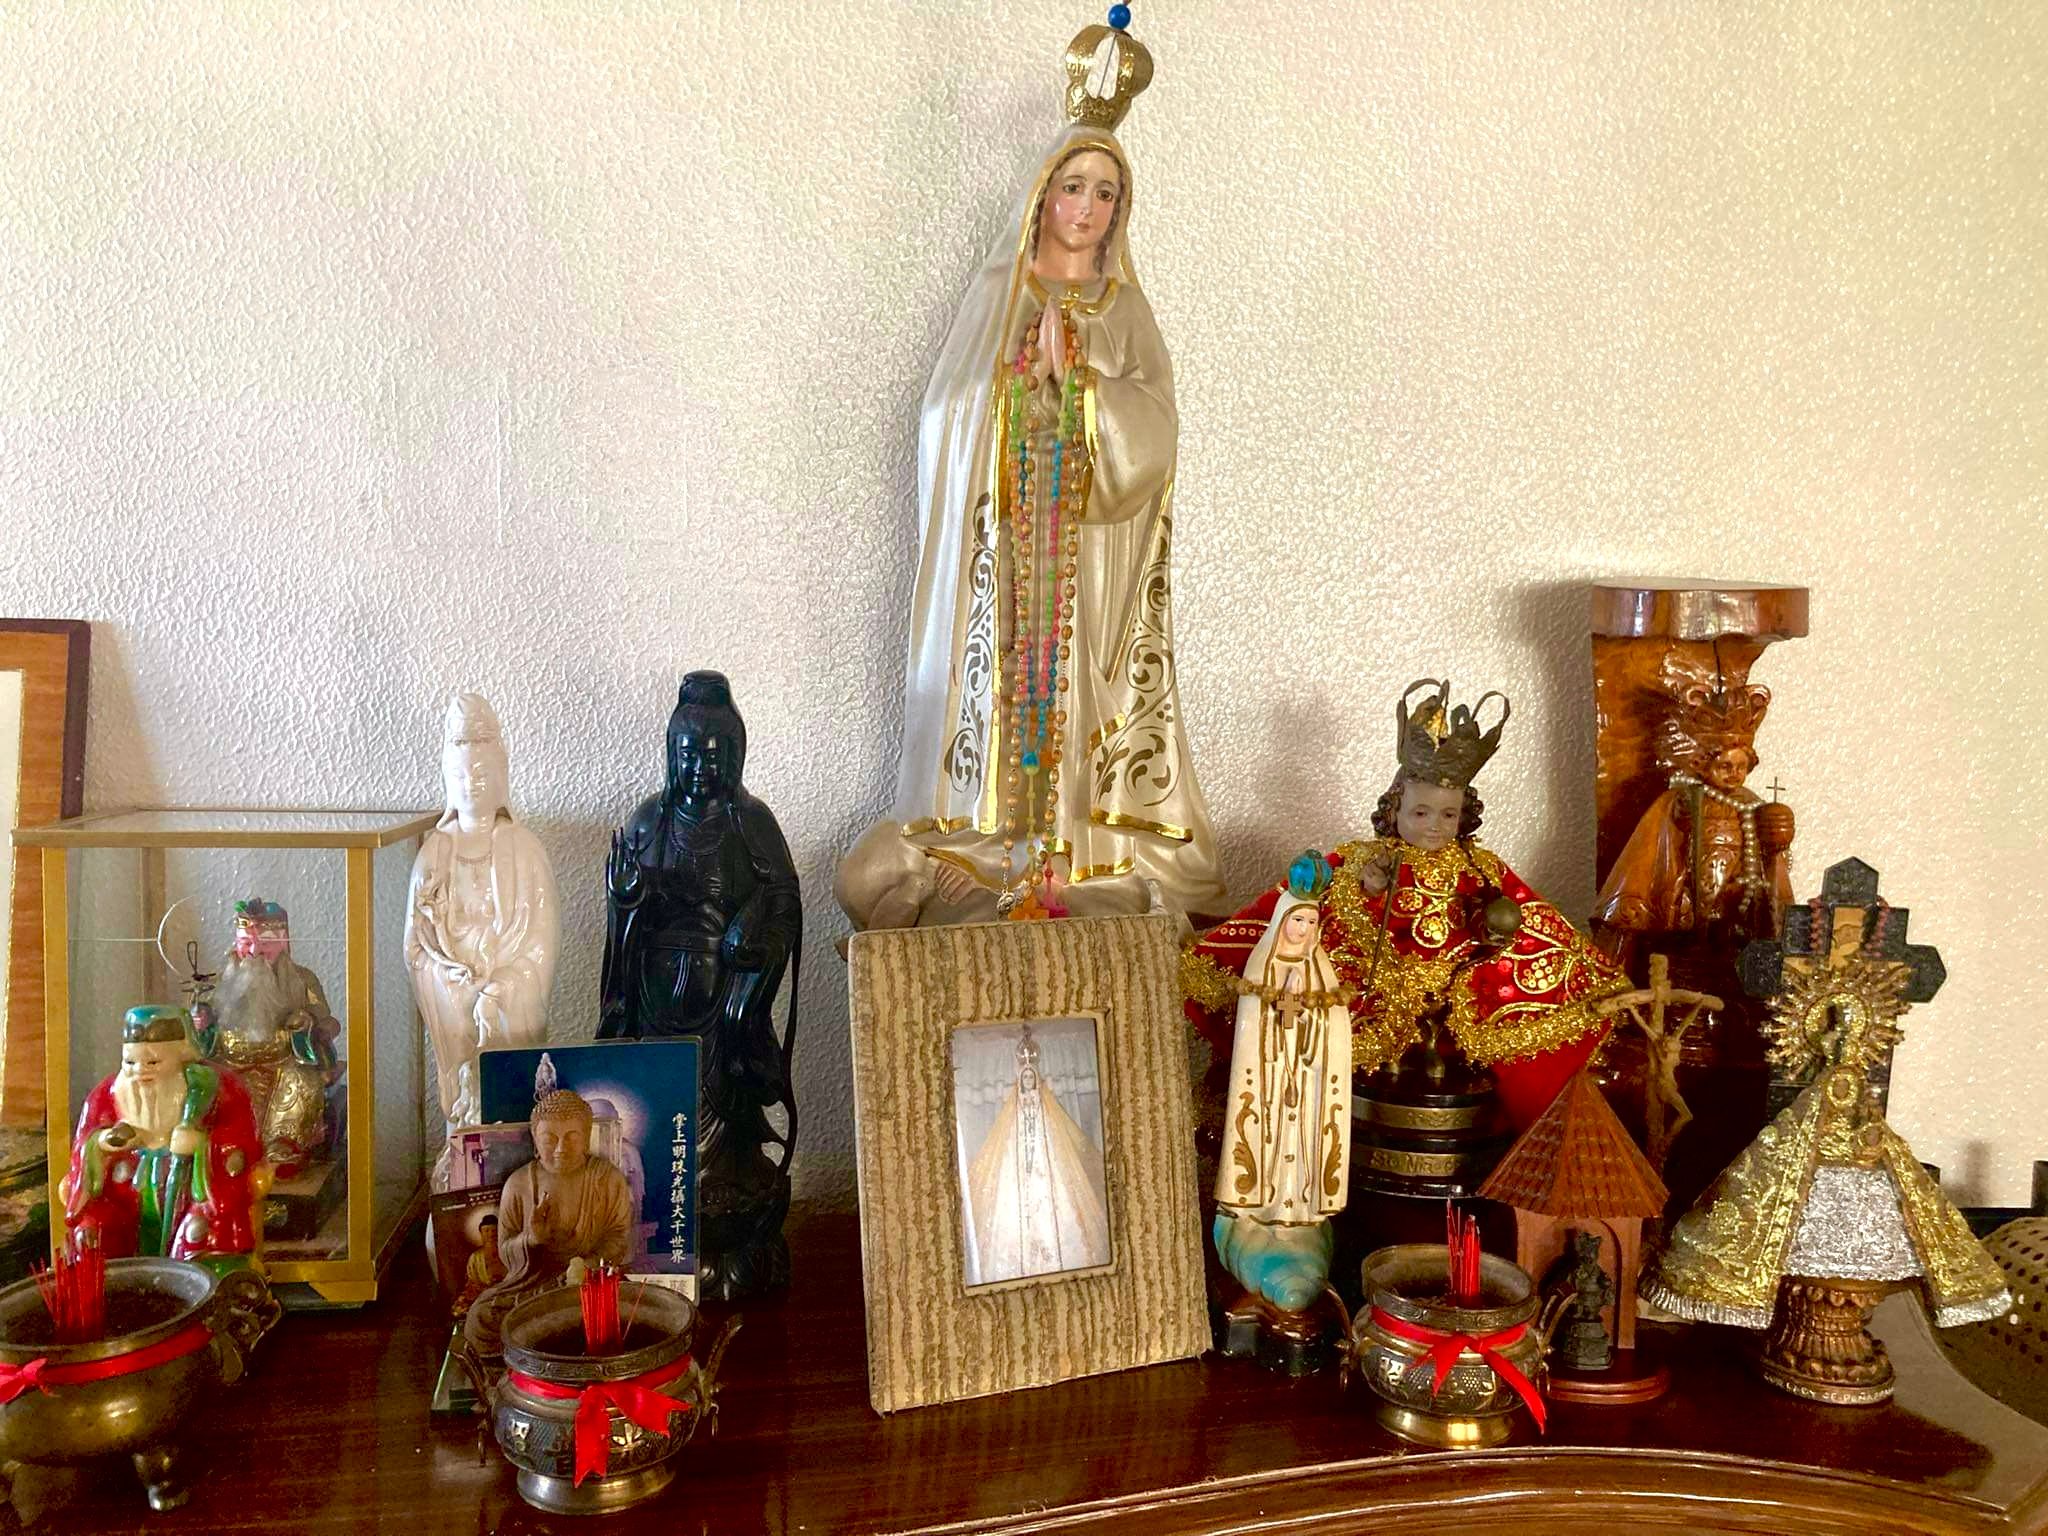 Buddha and Santo Niño: A Cebuano-Chinoy’s blend of faith and spirituality